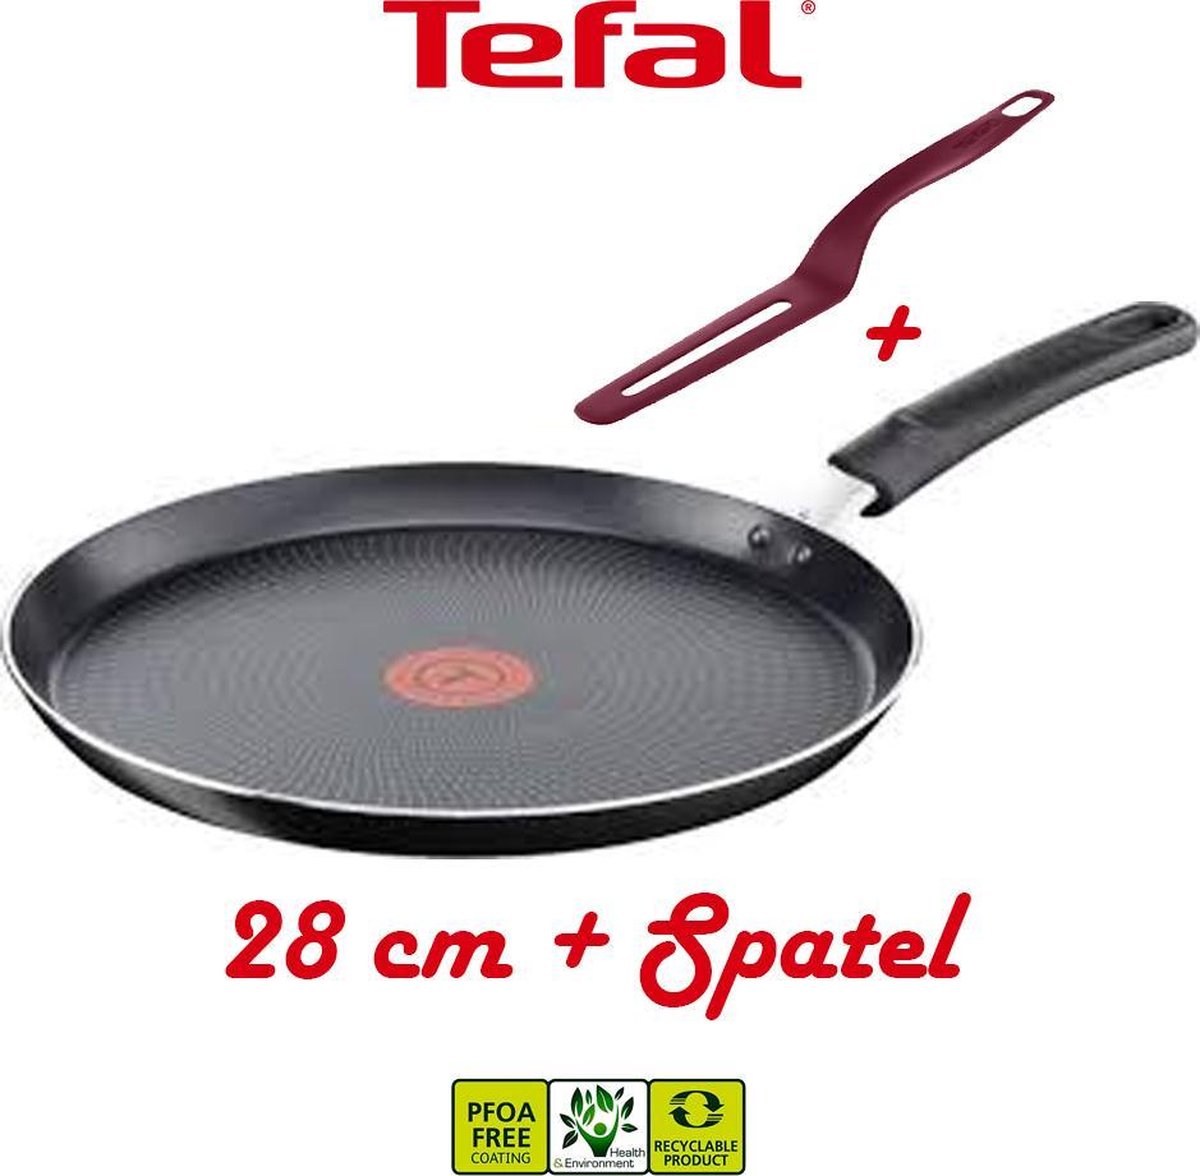 Tefal Cookware All Hobs Crêpière 28 cm + Spatule